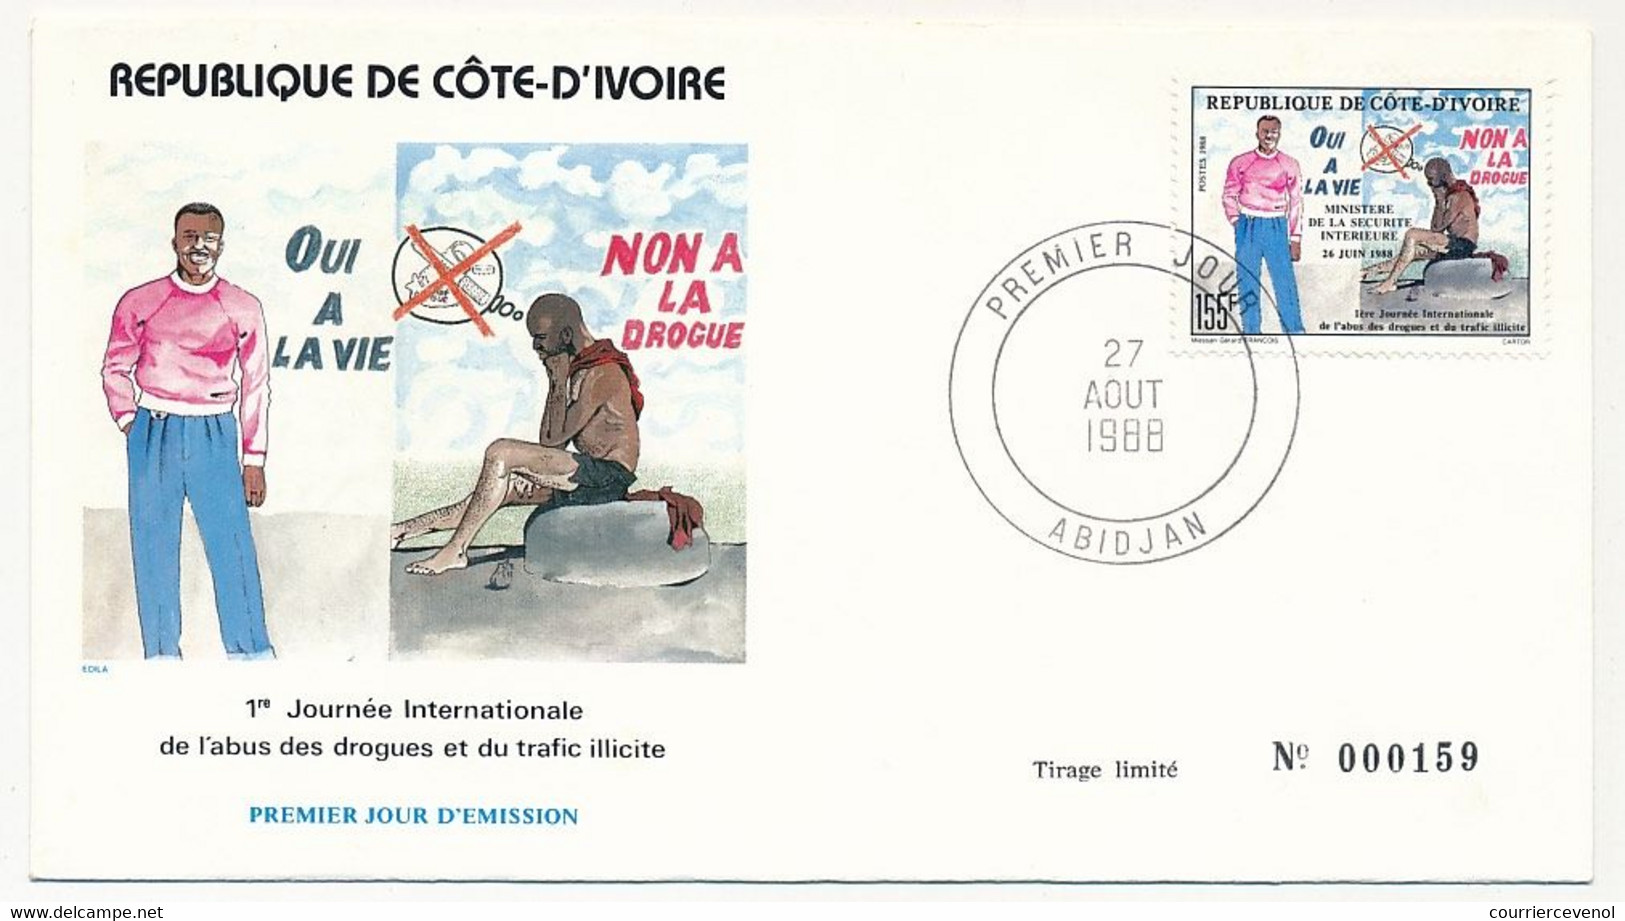 CÔTE D'IVOIRE - Env FDC - 155F Non à La Drogue, Oui à La Vie - 27 Aout 1988 - Abidjan - Côte D'Ivoire (1960-...)